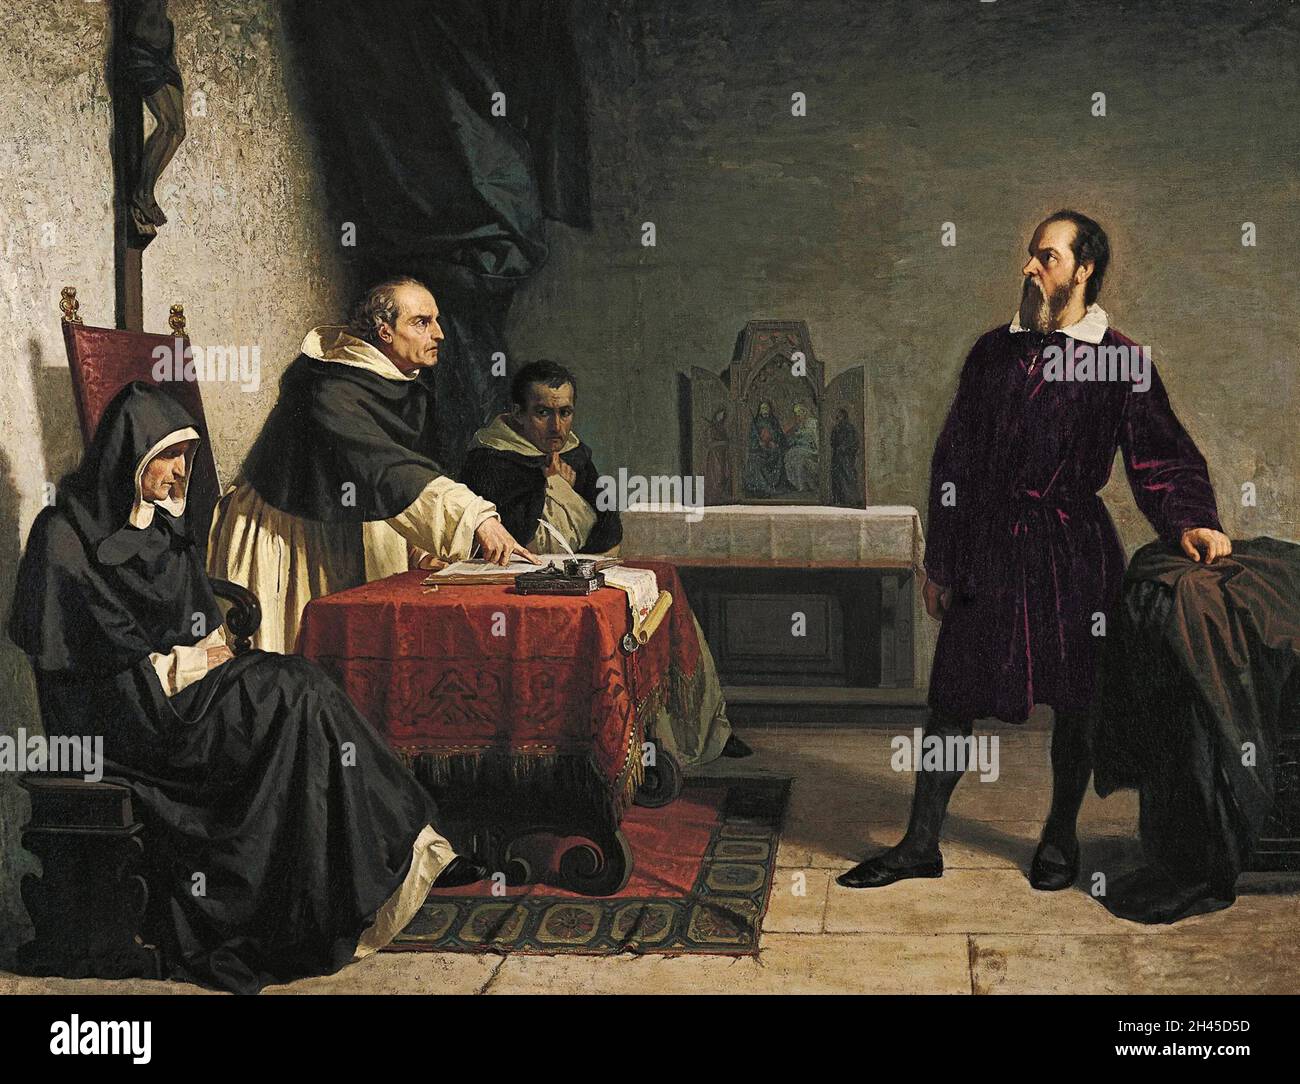 Der italienische Physiker und Astronom Galileo Galilei vor der römischen Inquisition, beschuldigt der Häresie wegen seiner Vermutung, dass die Sonne im Zentrum des Sonnensystems sei Stockfoto